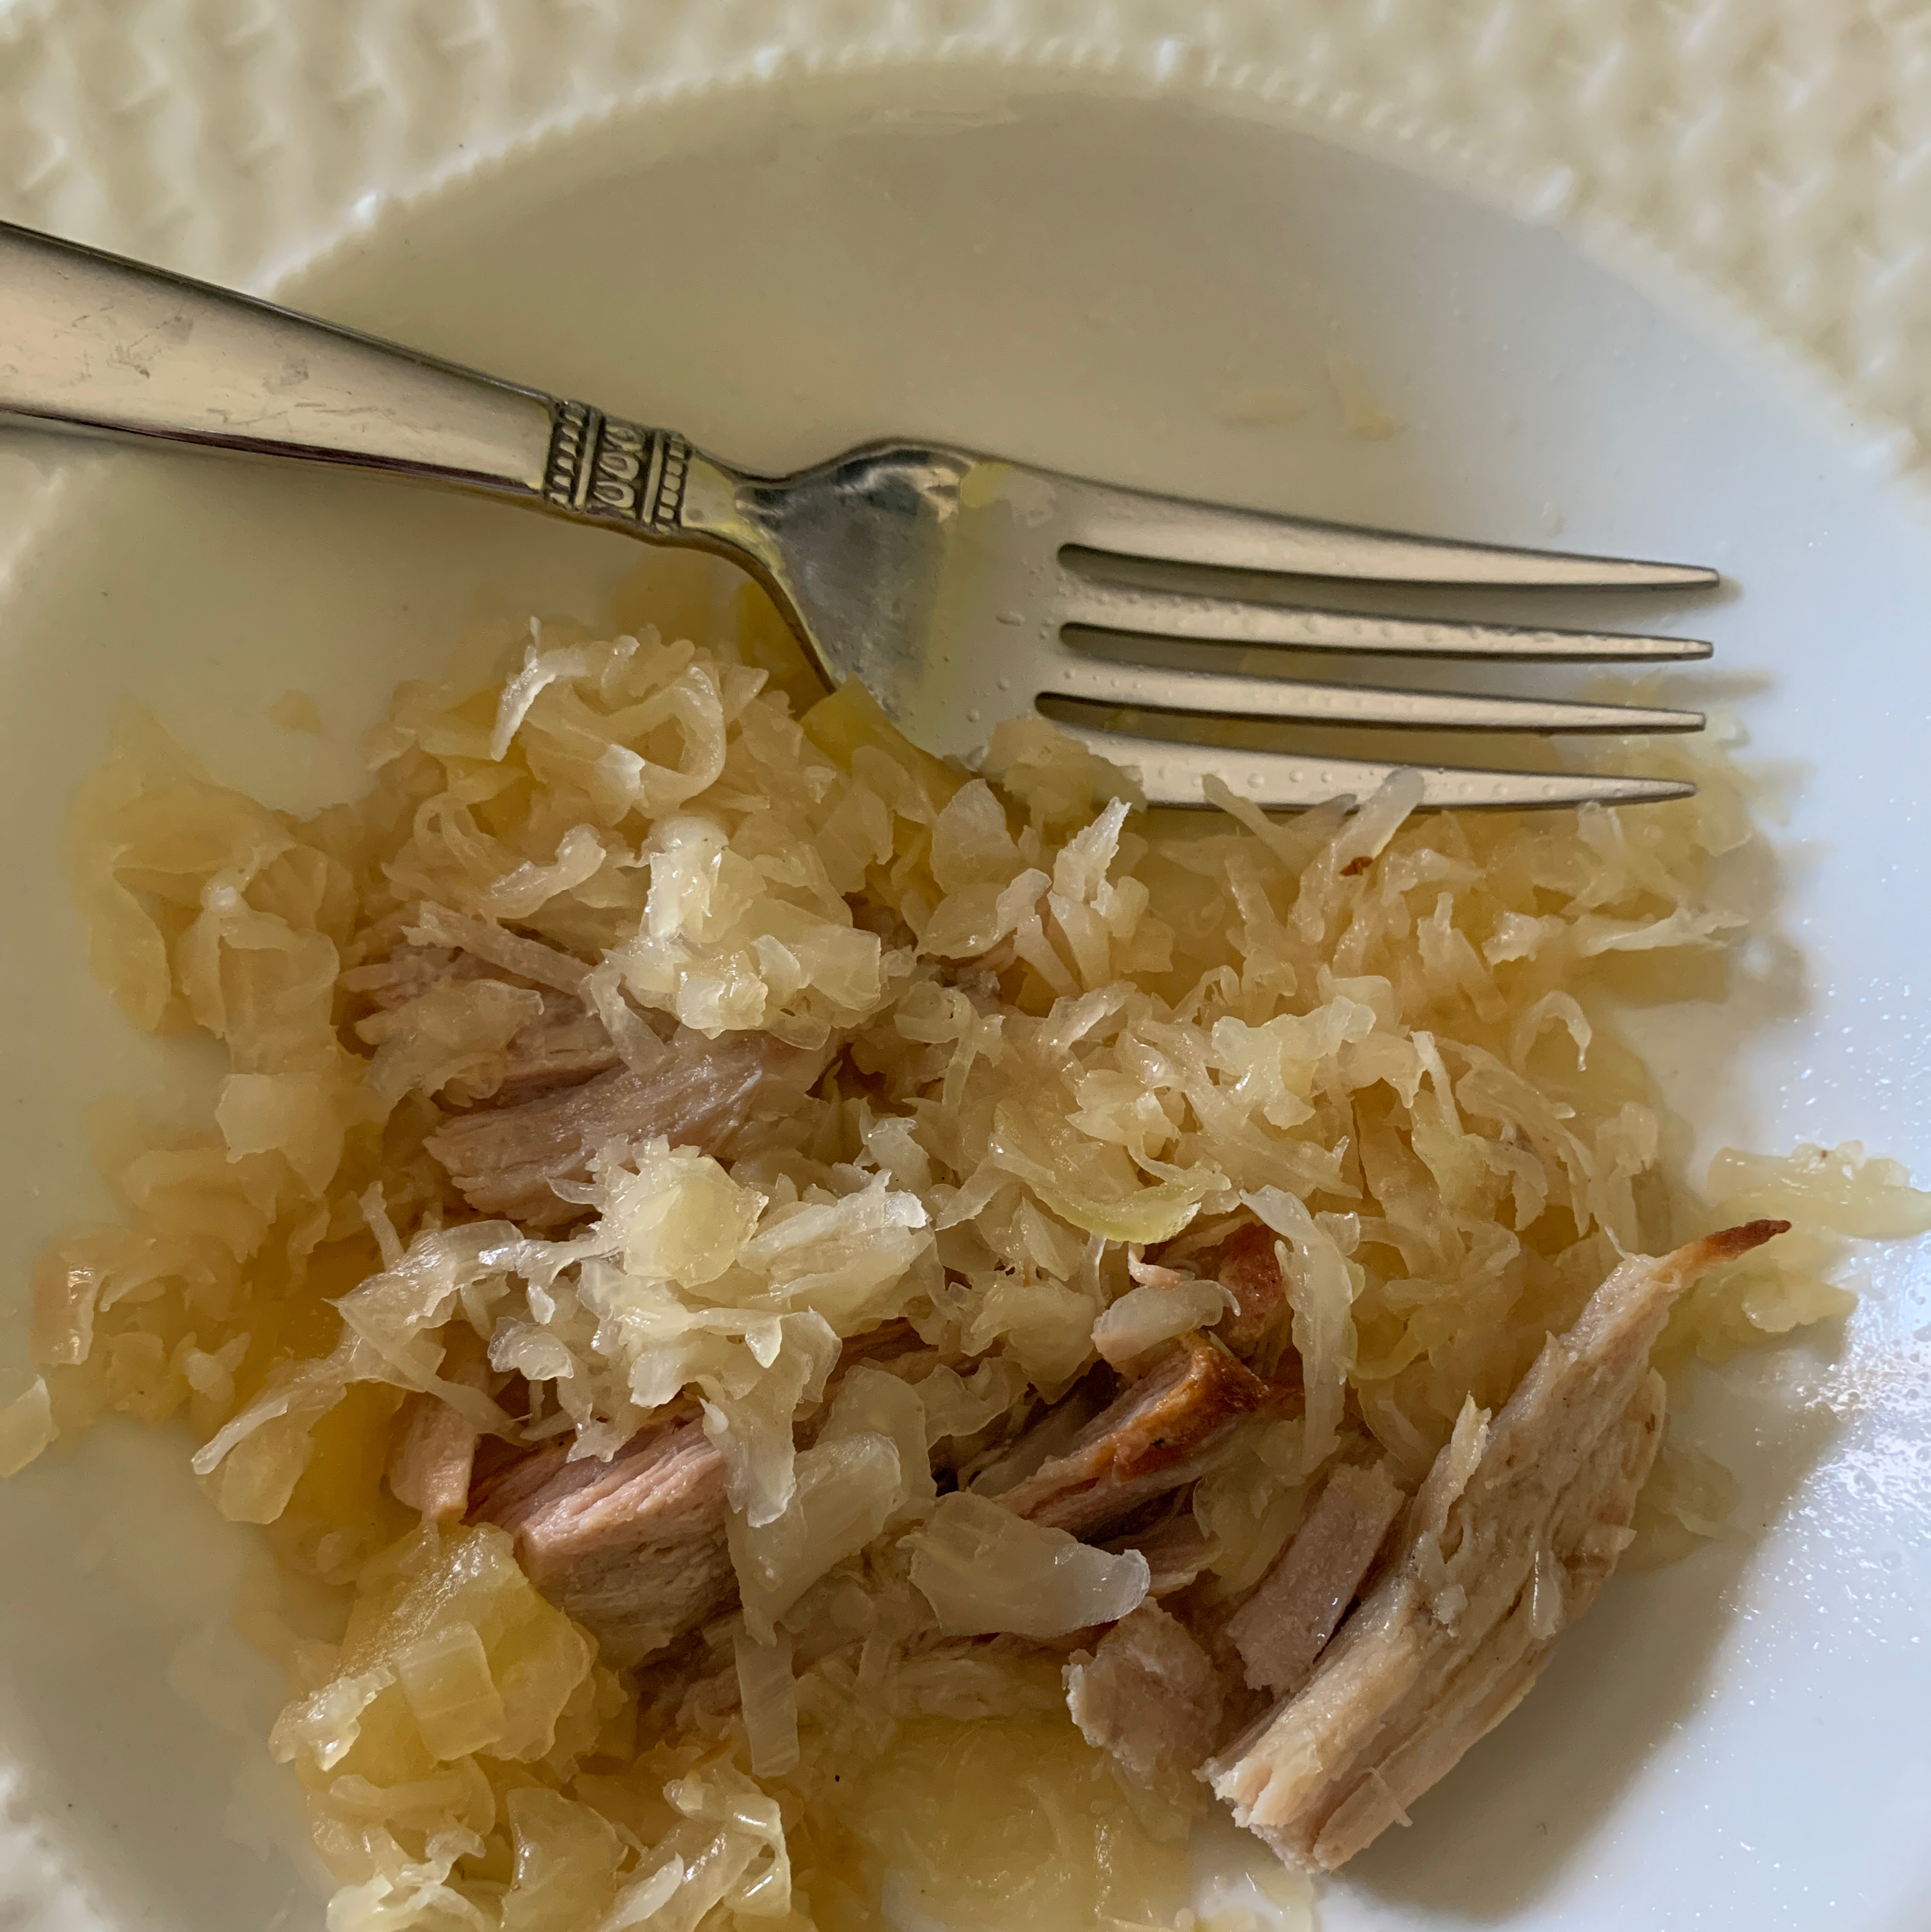 Shredded Pork and Sauerkraut